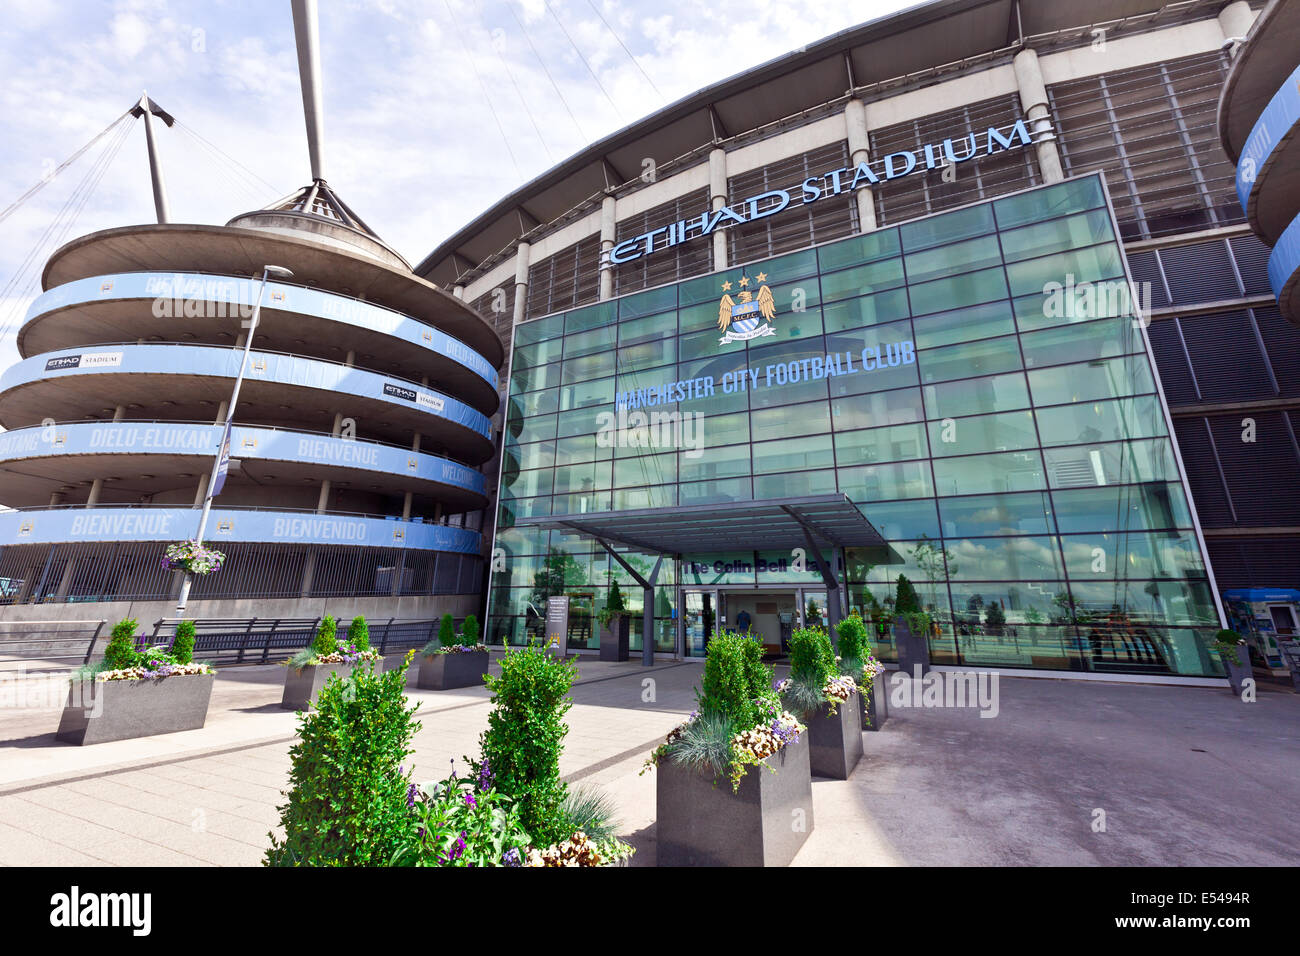 El estadio Etihad Stadium es el hogar de Manchester City Football Club de la Liga Premier Inglesa, uno de los más exitosos clubes en Inglaterra. Foto de stock